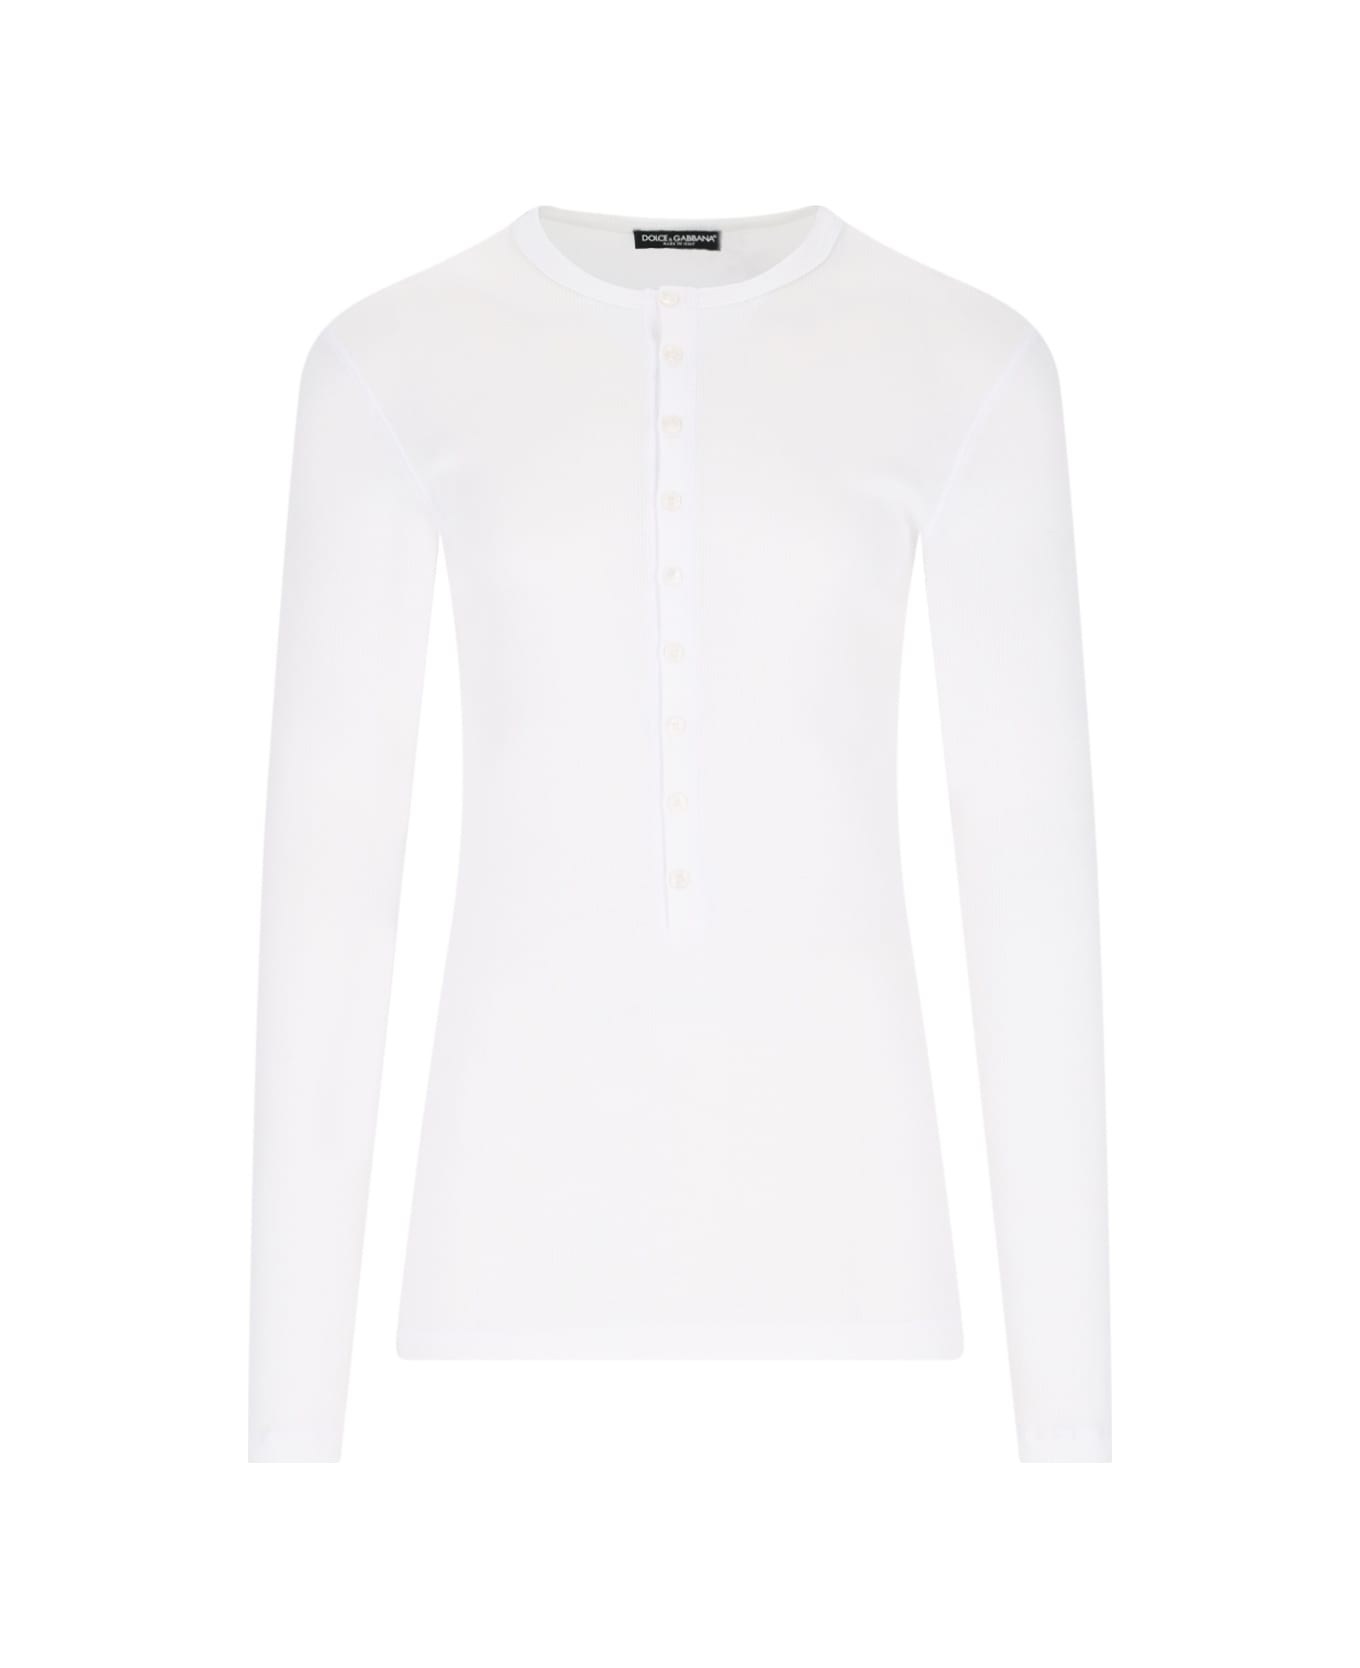 Dolce & Gabbana 'serafino' T-shirt - White